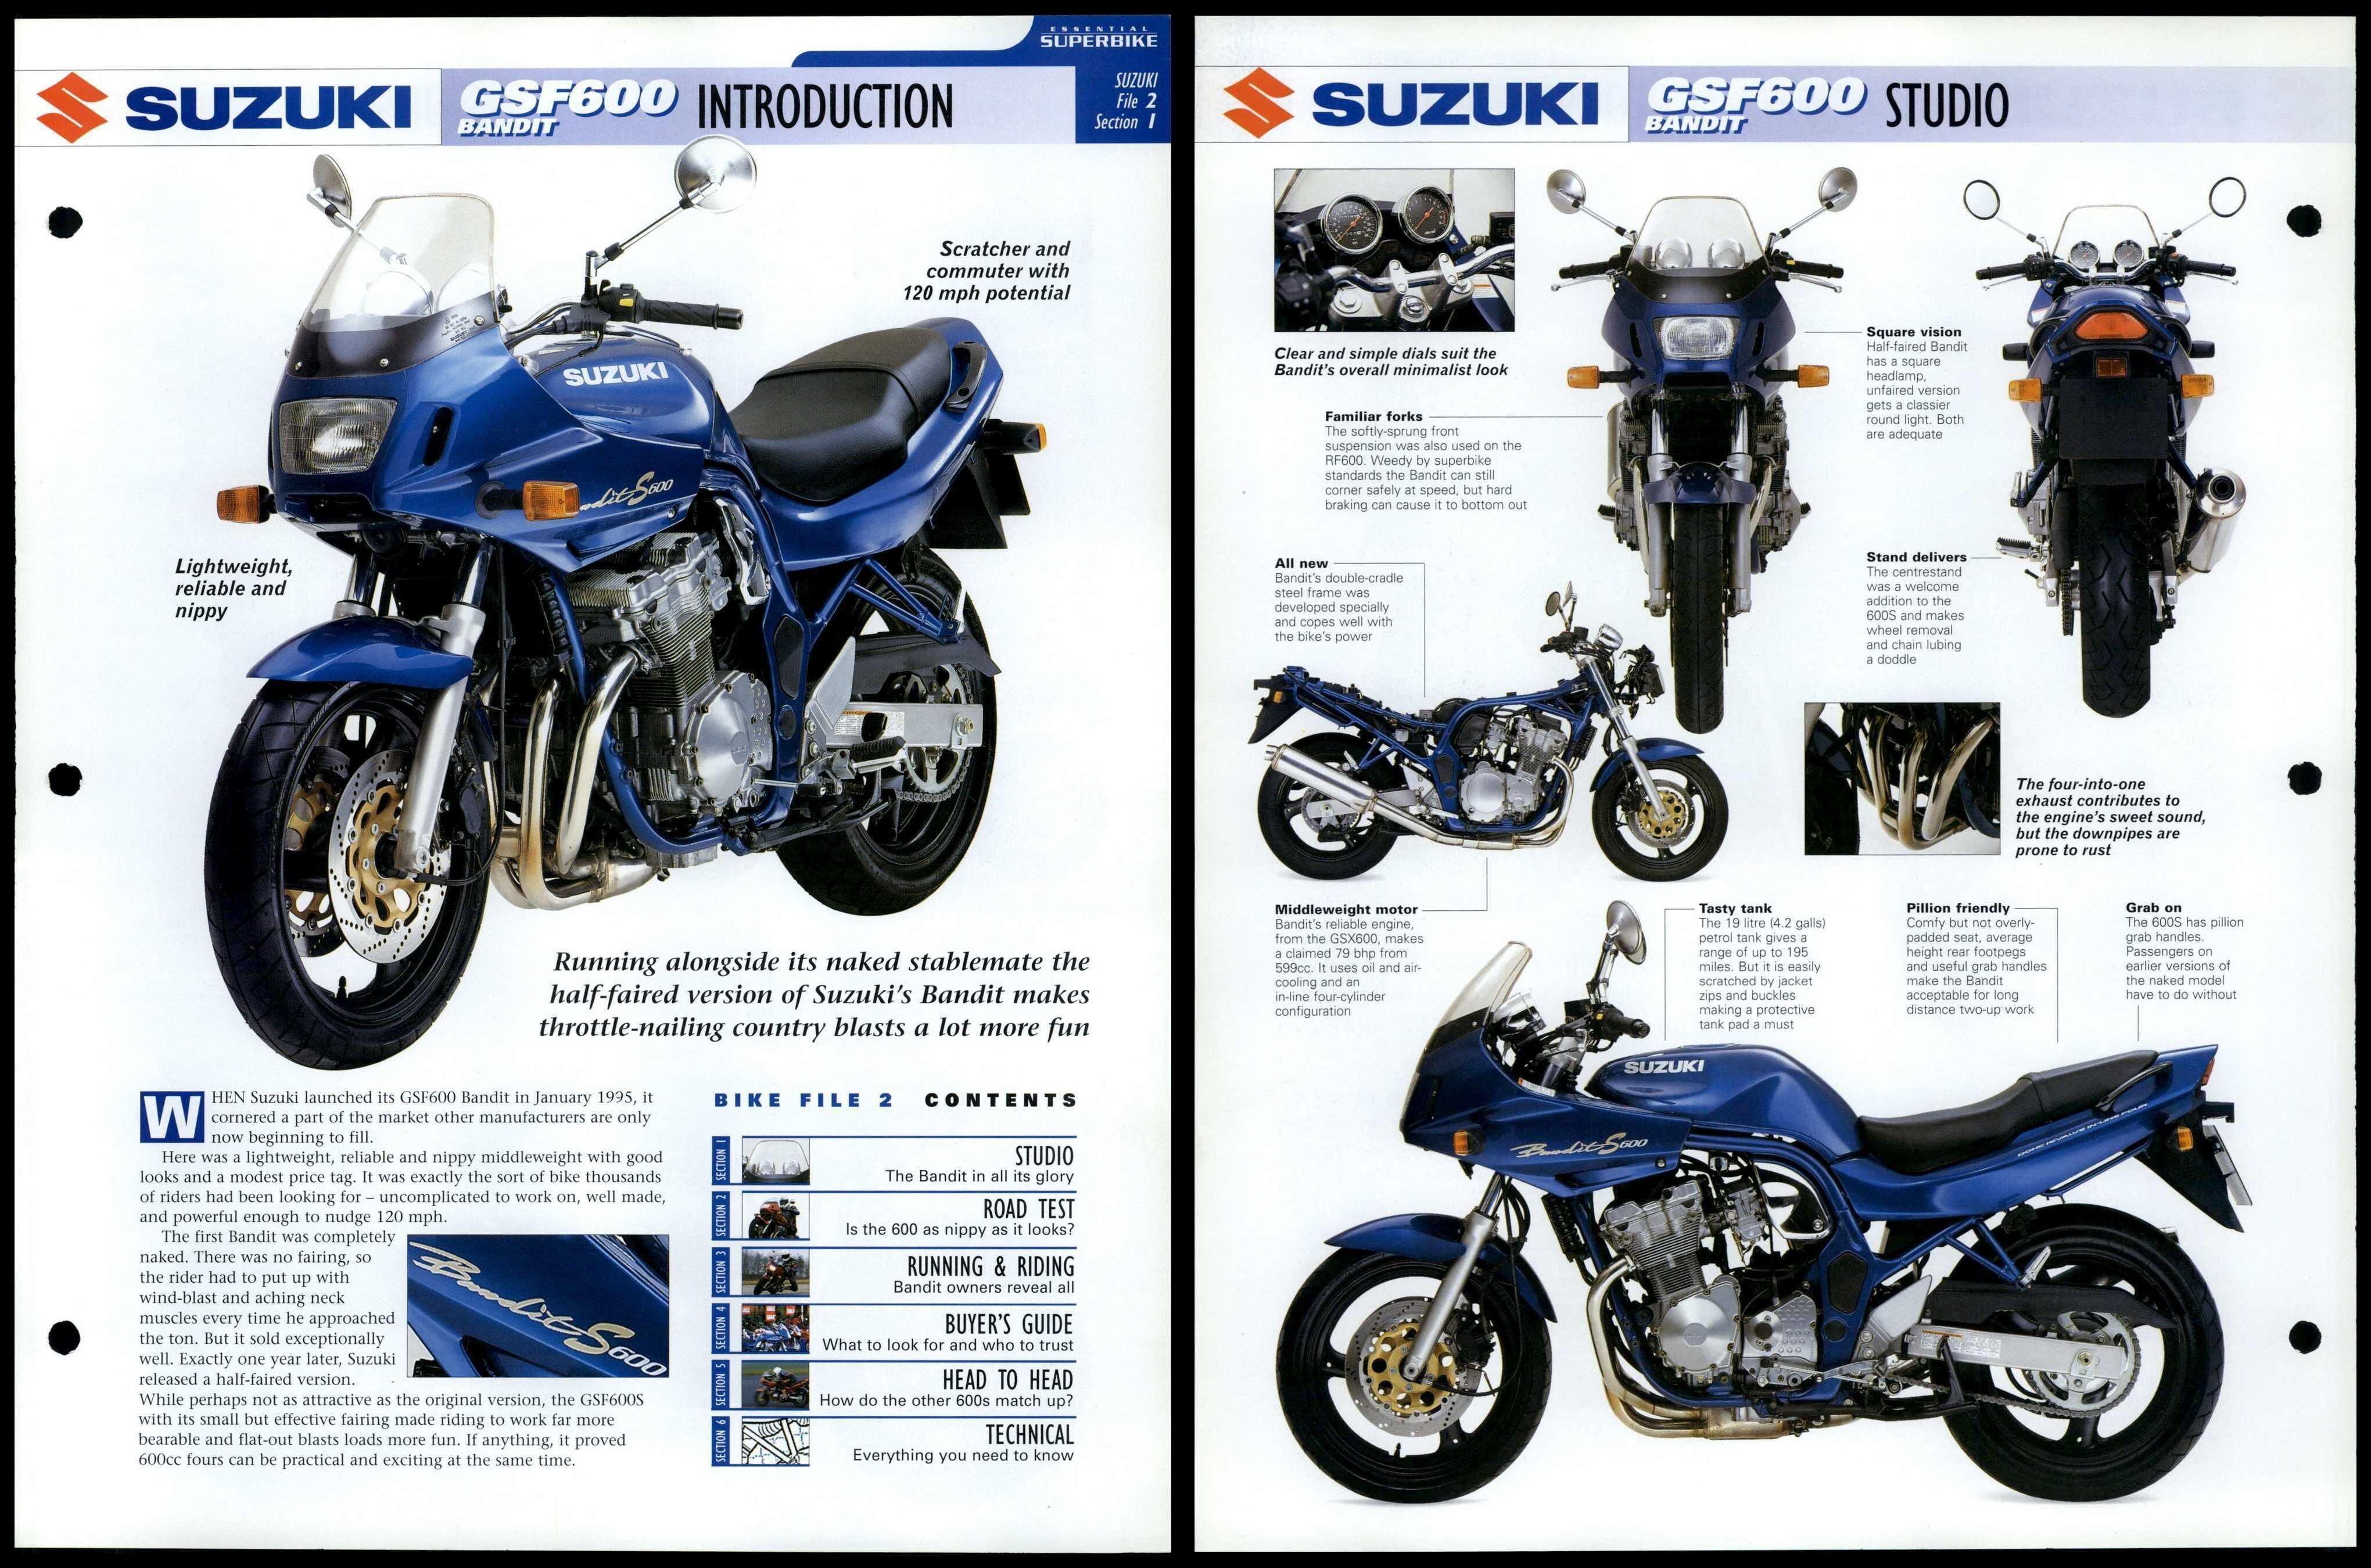 Dynomite Motorcycles - 1999 Suzuki GSF 600 Bandit 